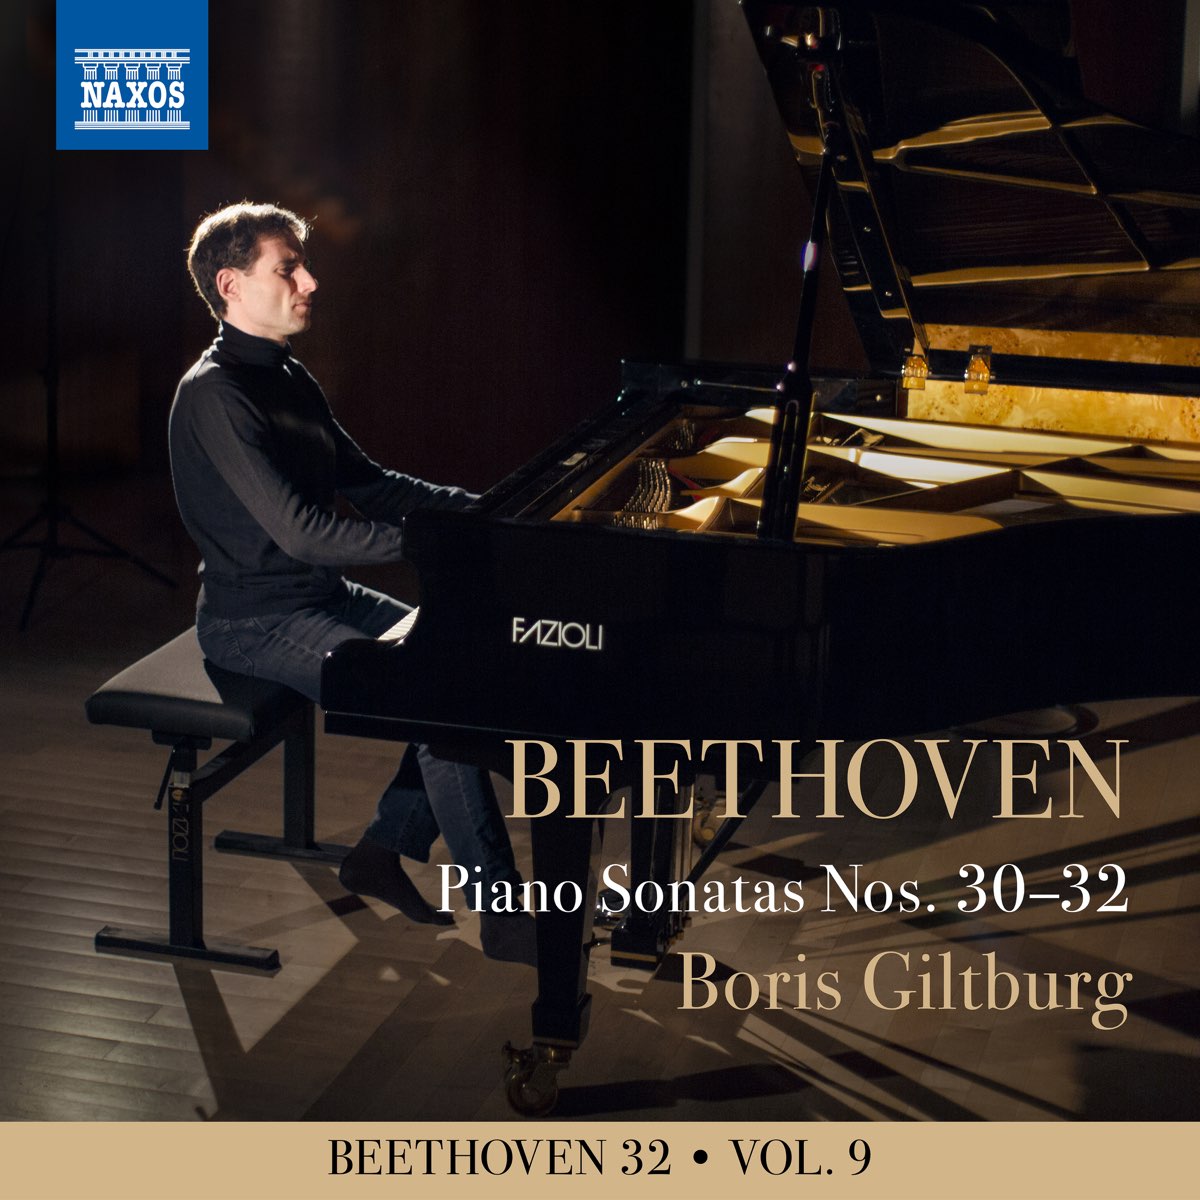 Beethoven 32, Vol. 9: Piano Sonatas Nos. 30-32 - Album by Boris Giltburg -  Apple Music